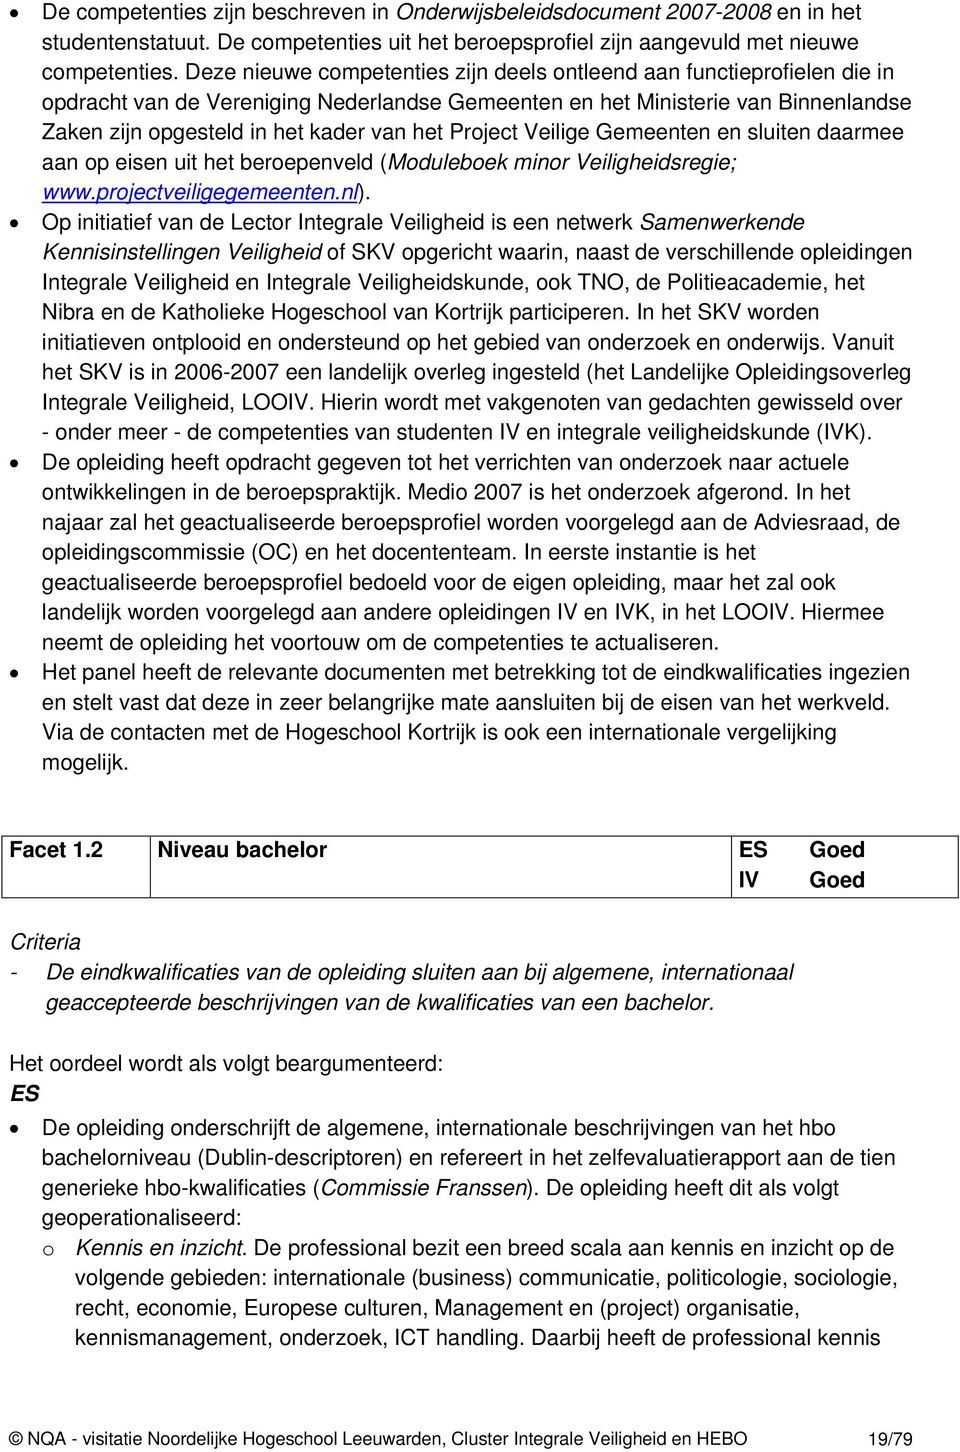 Project Veilige Gemeenten en sluiten daarmee aan op eisen uit het beroepenveld (Moduleboek minor Veiligheidsregie; www.projectveiligegemeenten.nl).